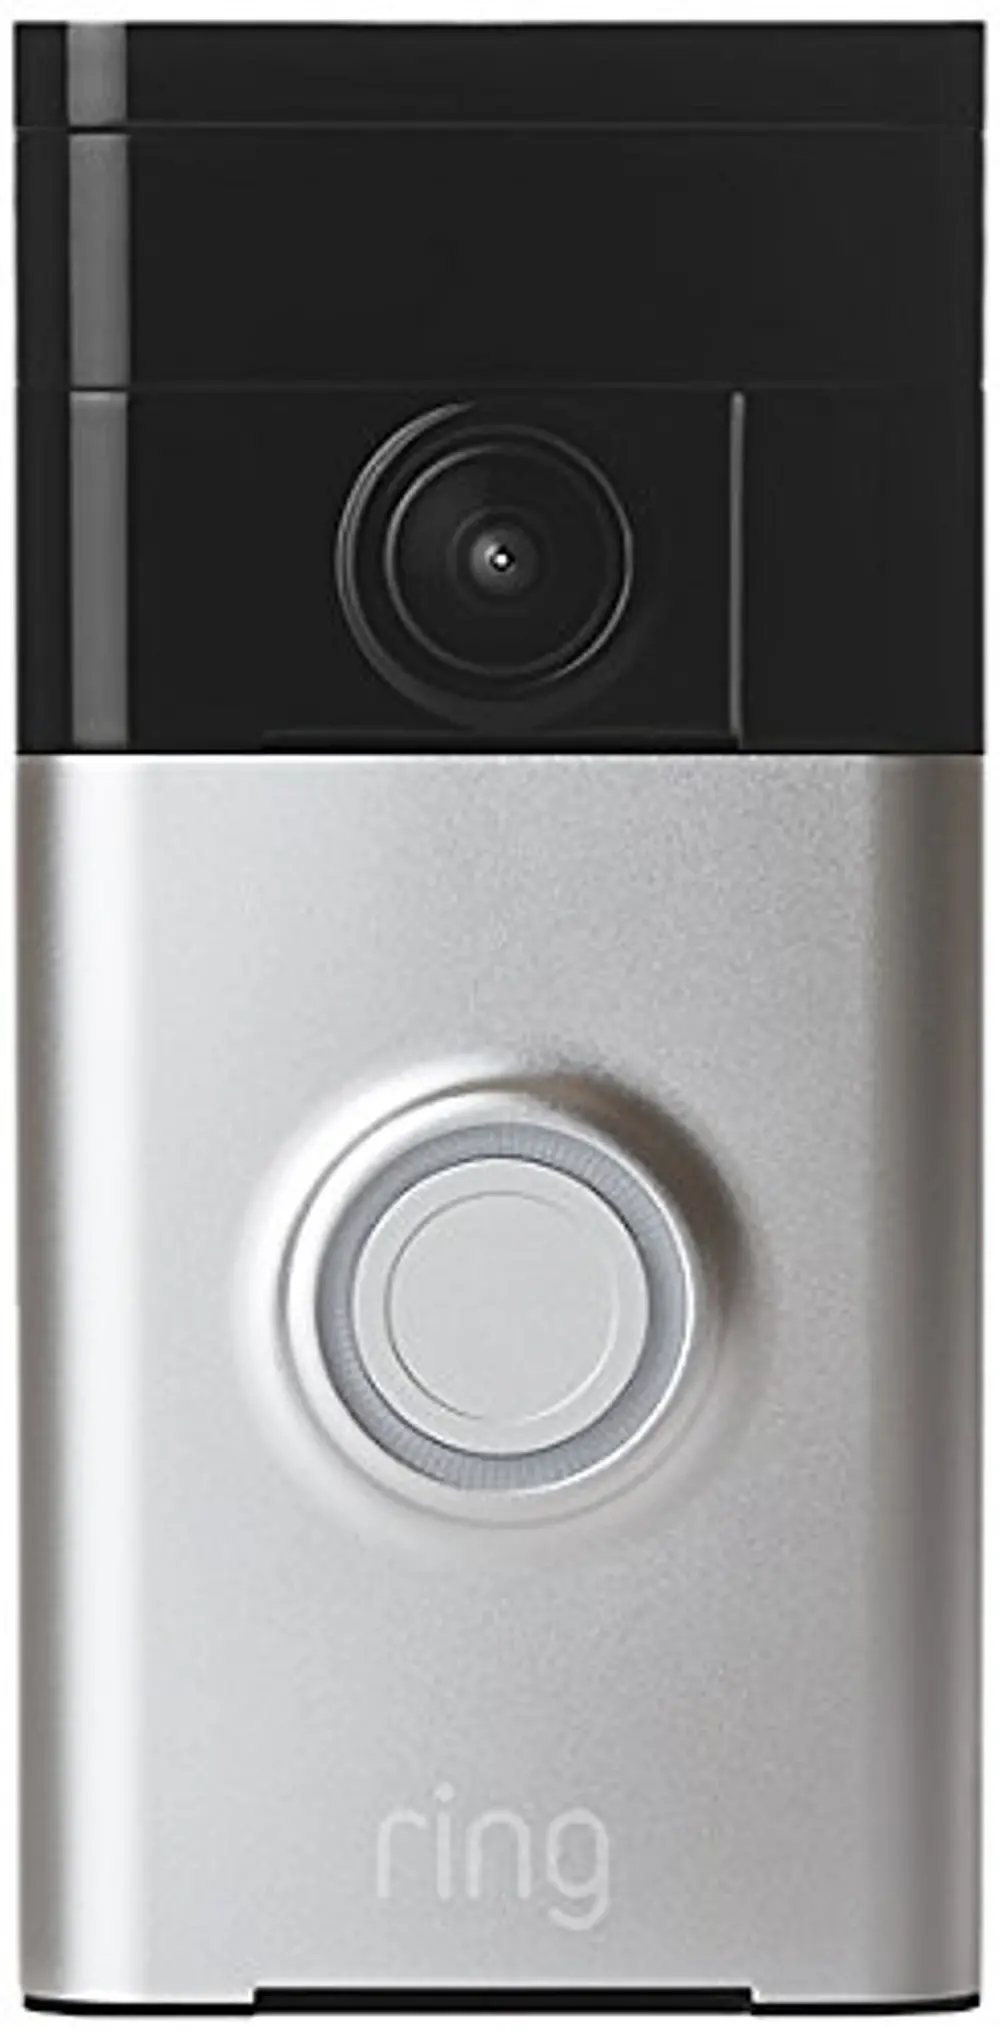 Ring WiFi Enabled Video Doorbell - Satin Nickel-1